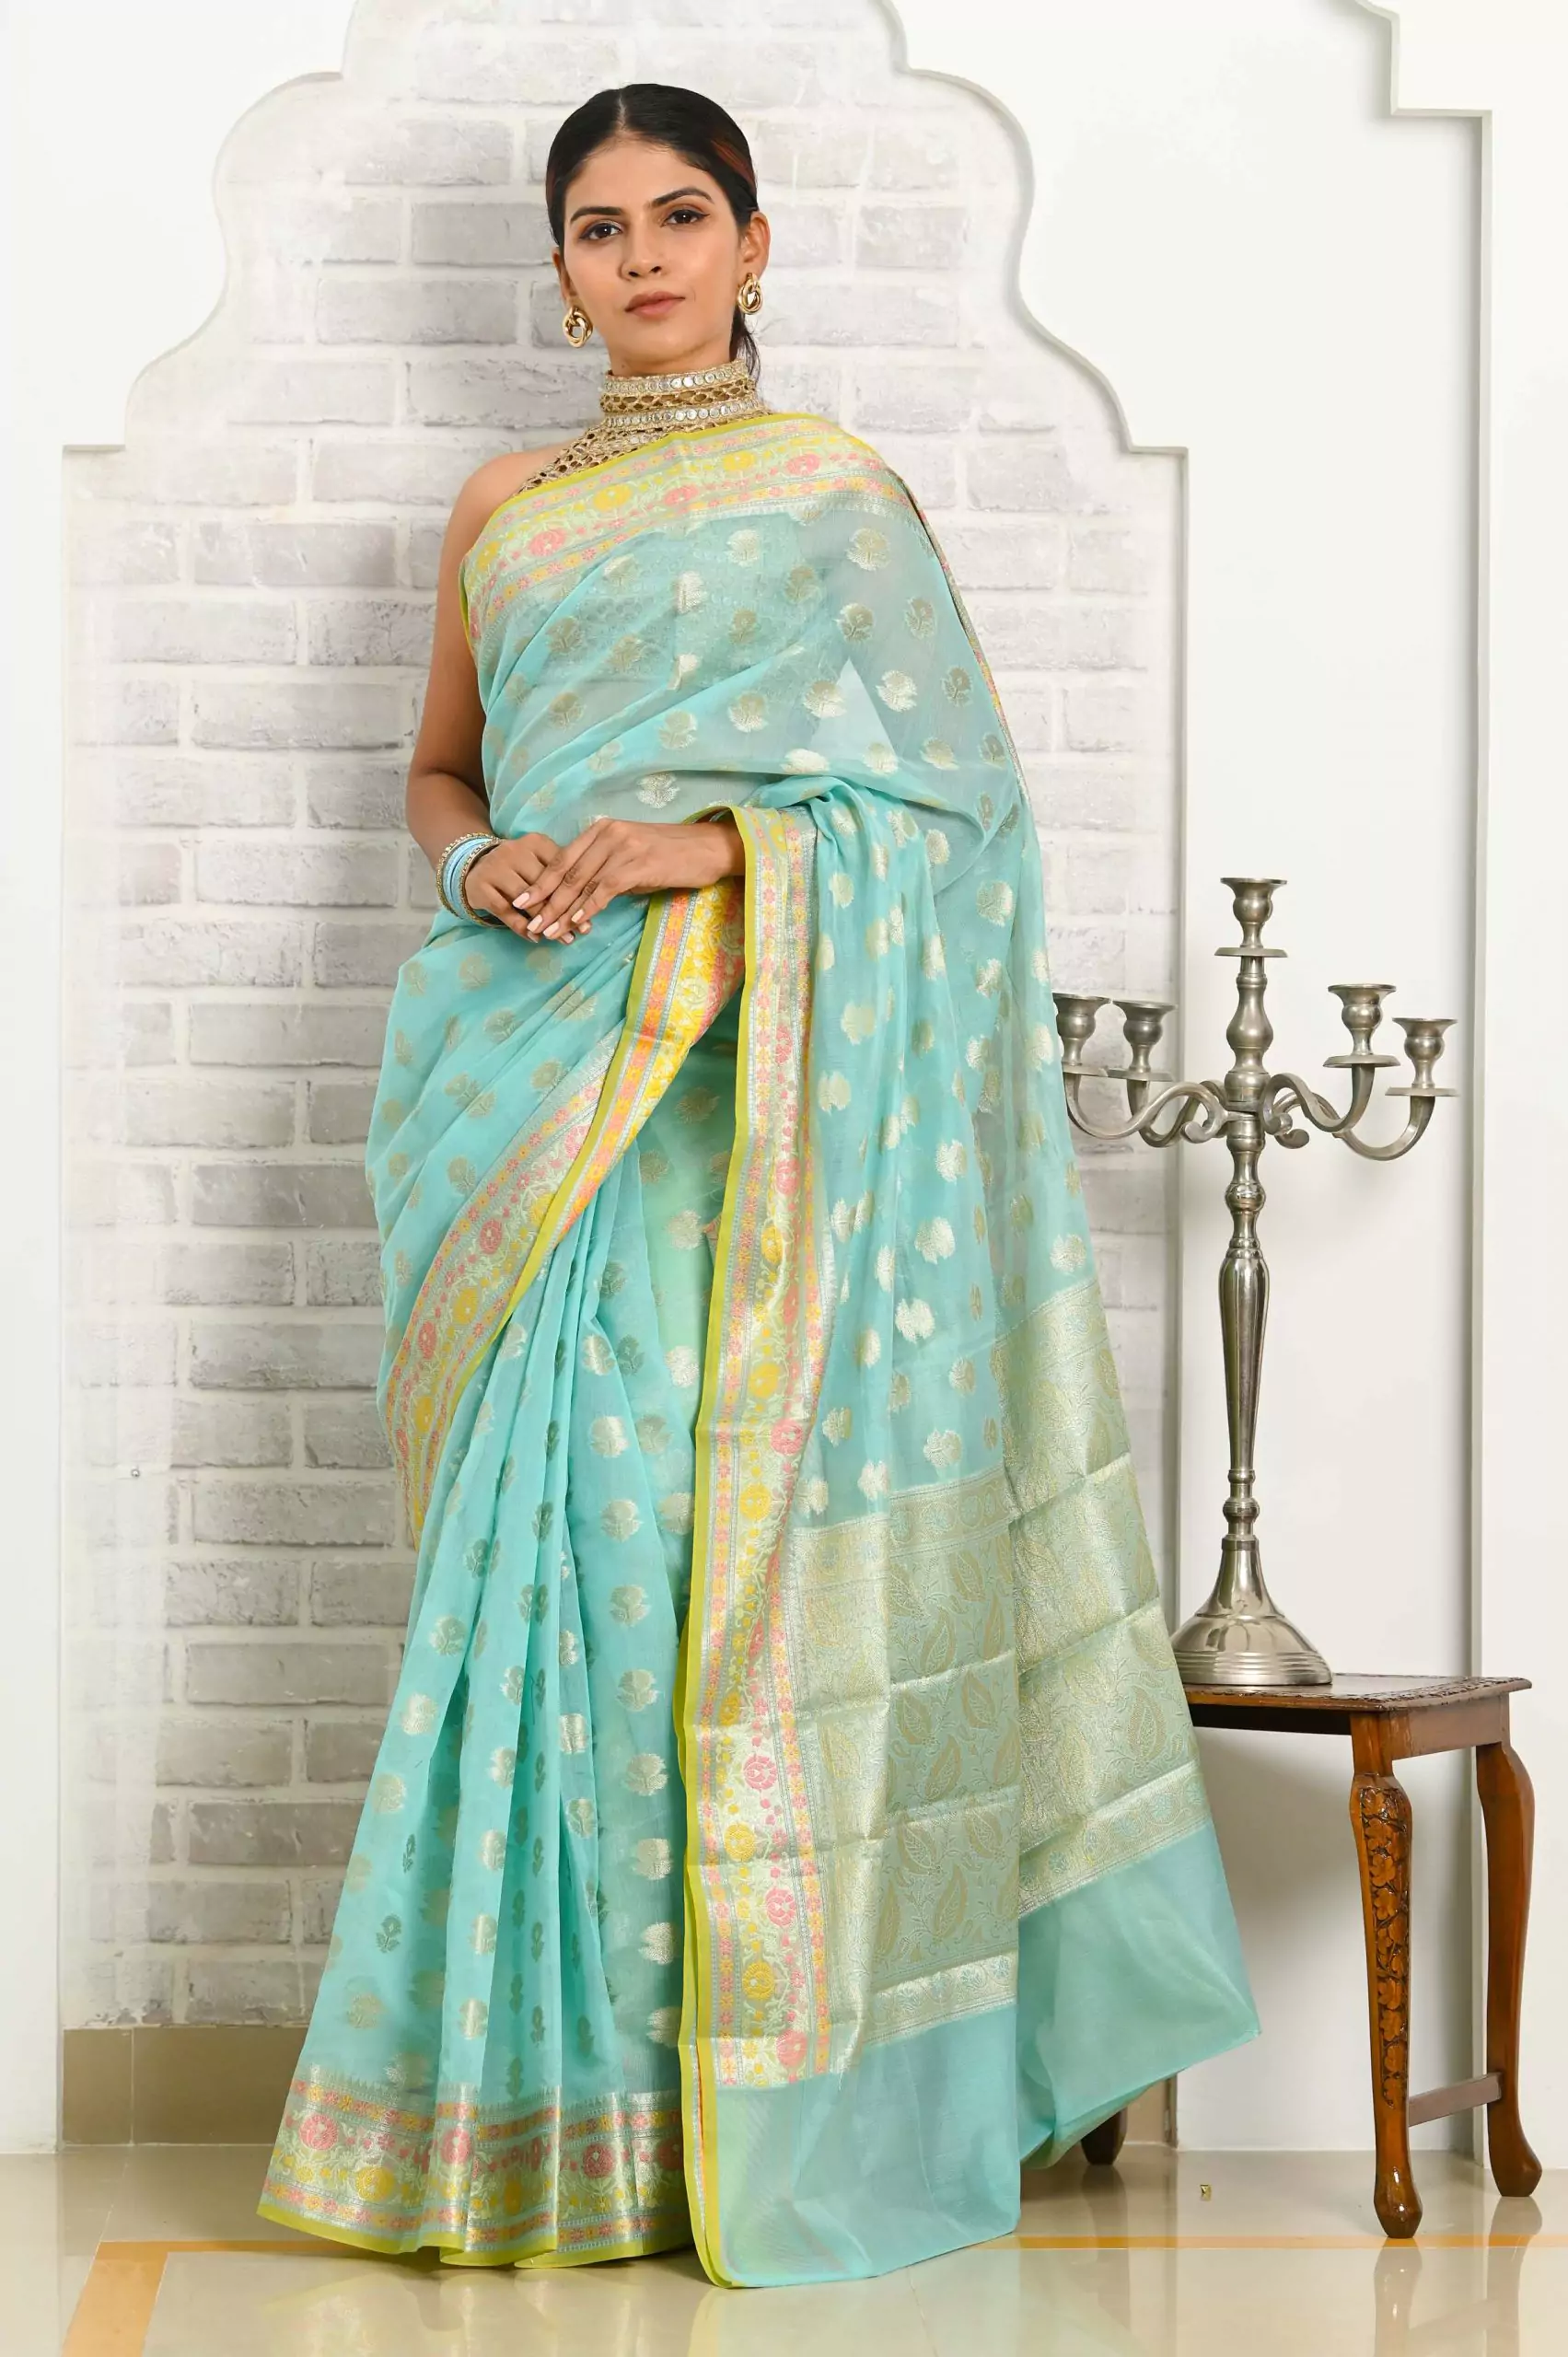 Women's Traditional Woven Banarasi Silk Saree With Blouse - Lilots |  Designer blouse patterns, Navy blue saree, Elegant saree